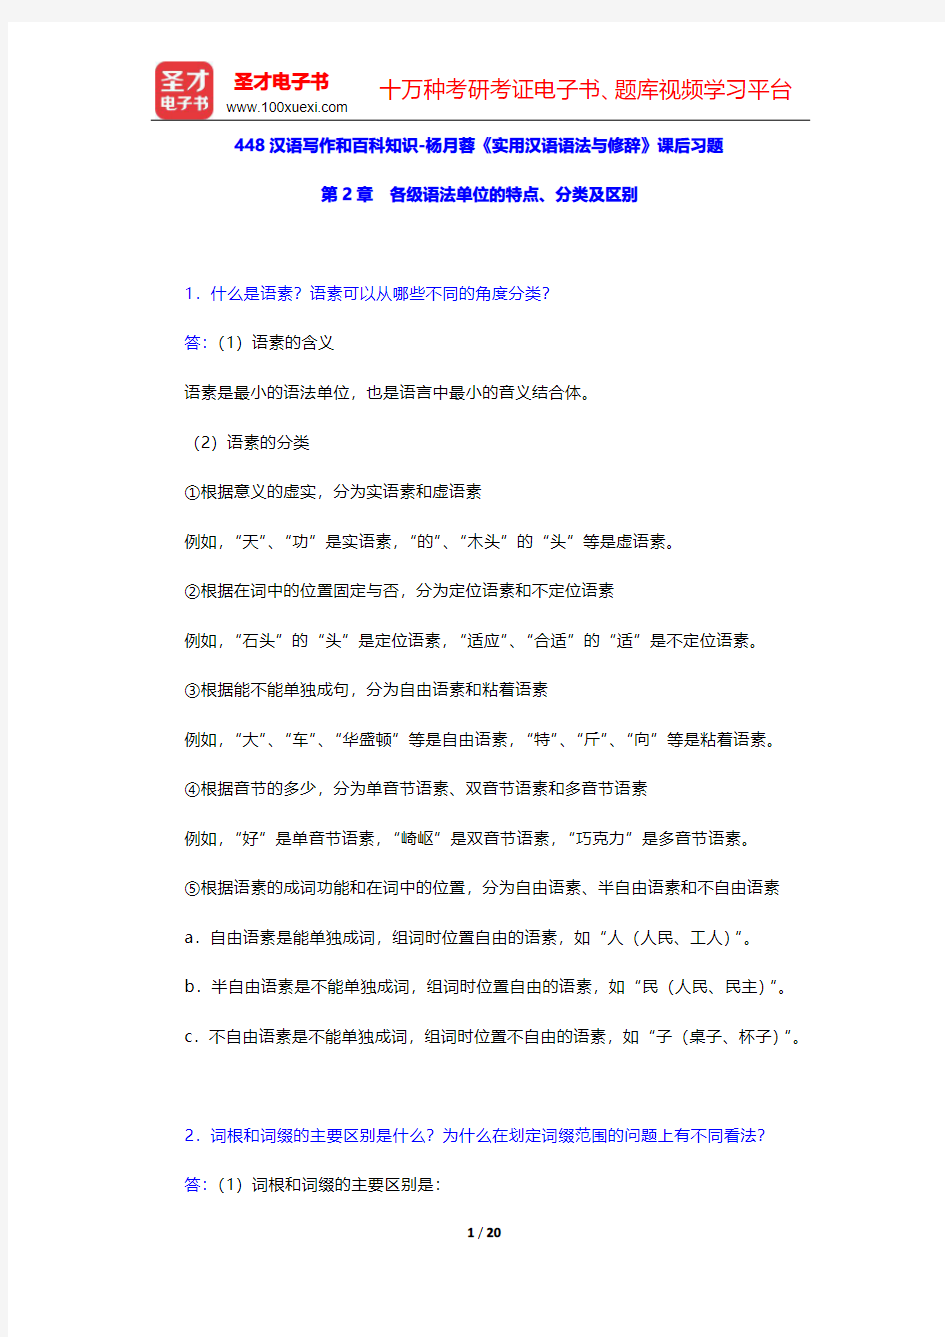 448汉语写作和百科知识-杨月蓉《实用汉语语法与修辞》课后习题(各级语法单位的特点、分类及区别)【圣